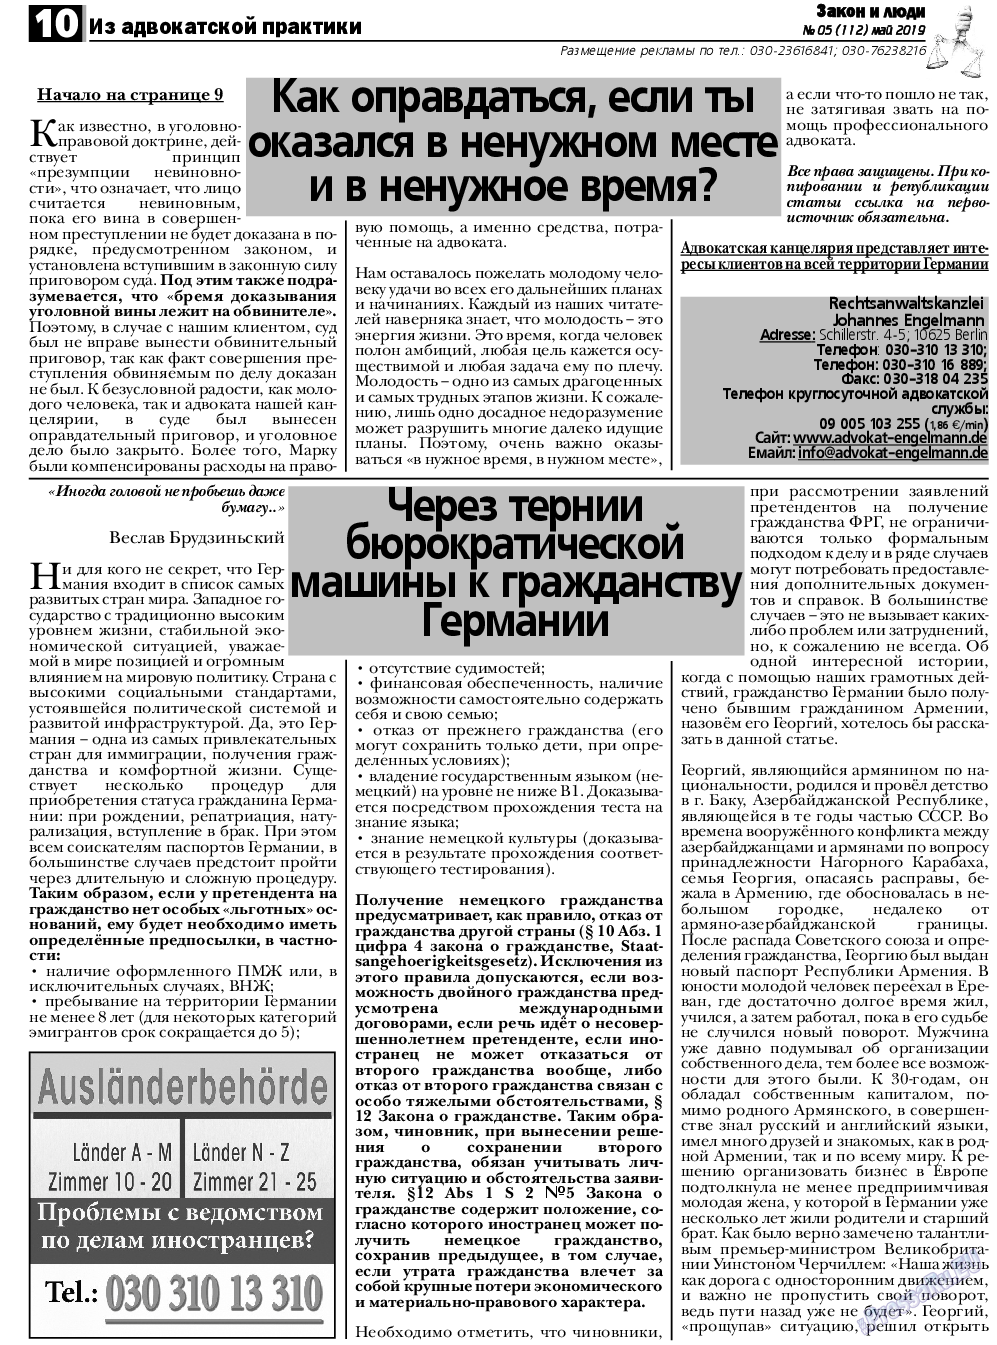 Закон и люди, газета. 2019 №5 стр.10